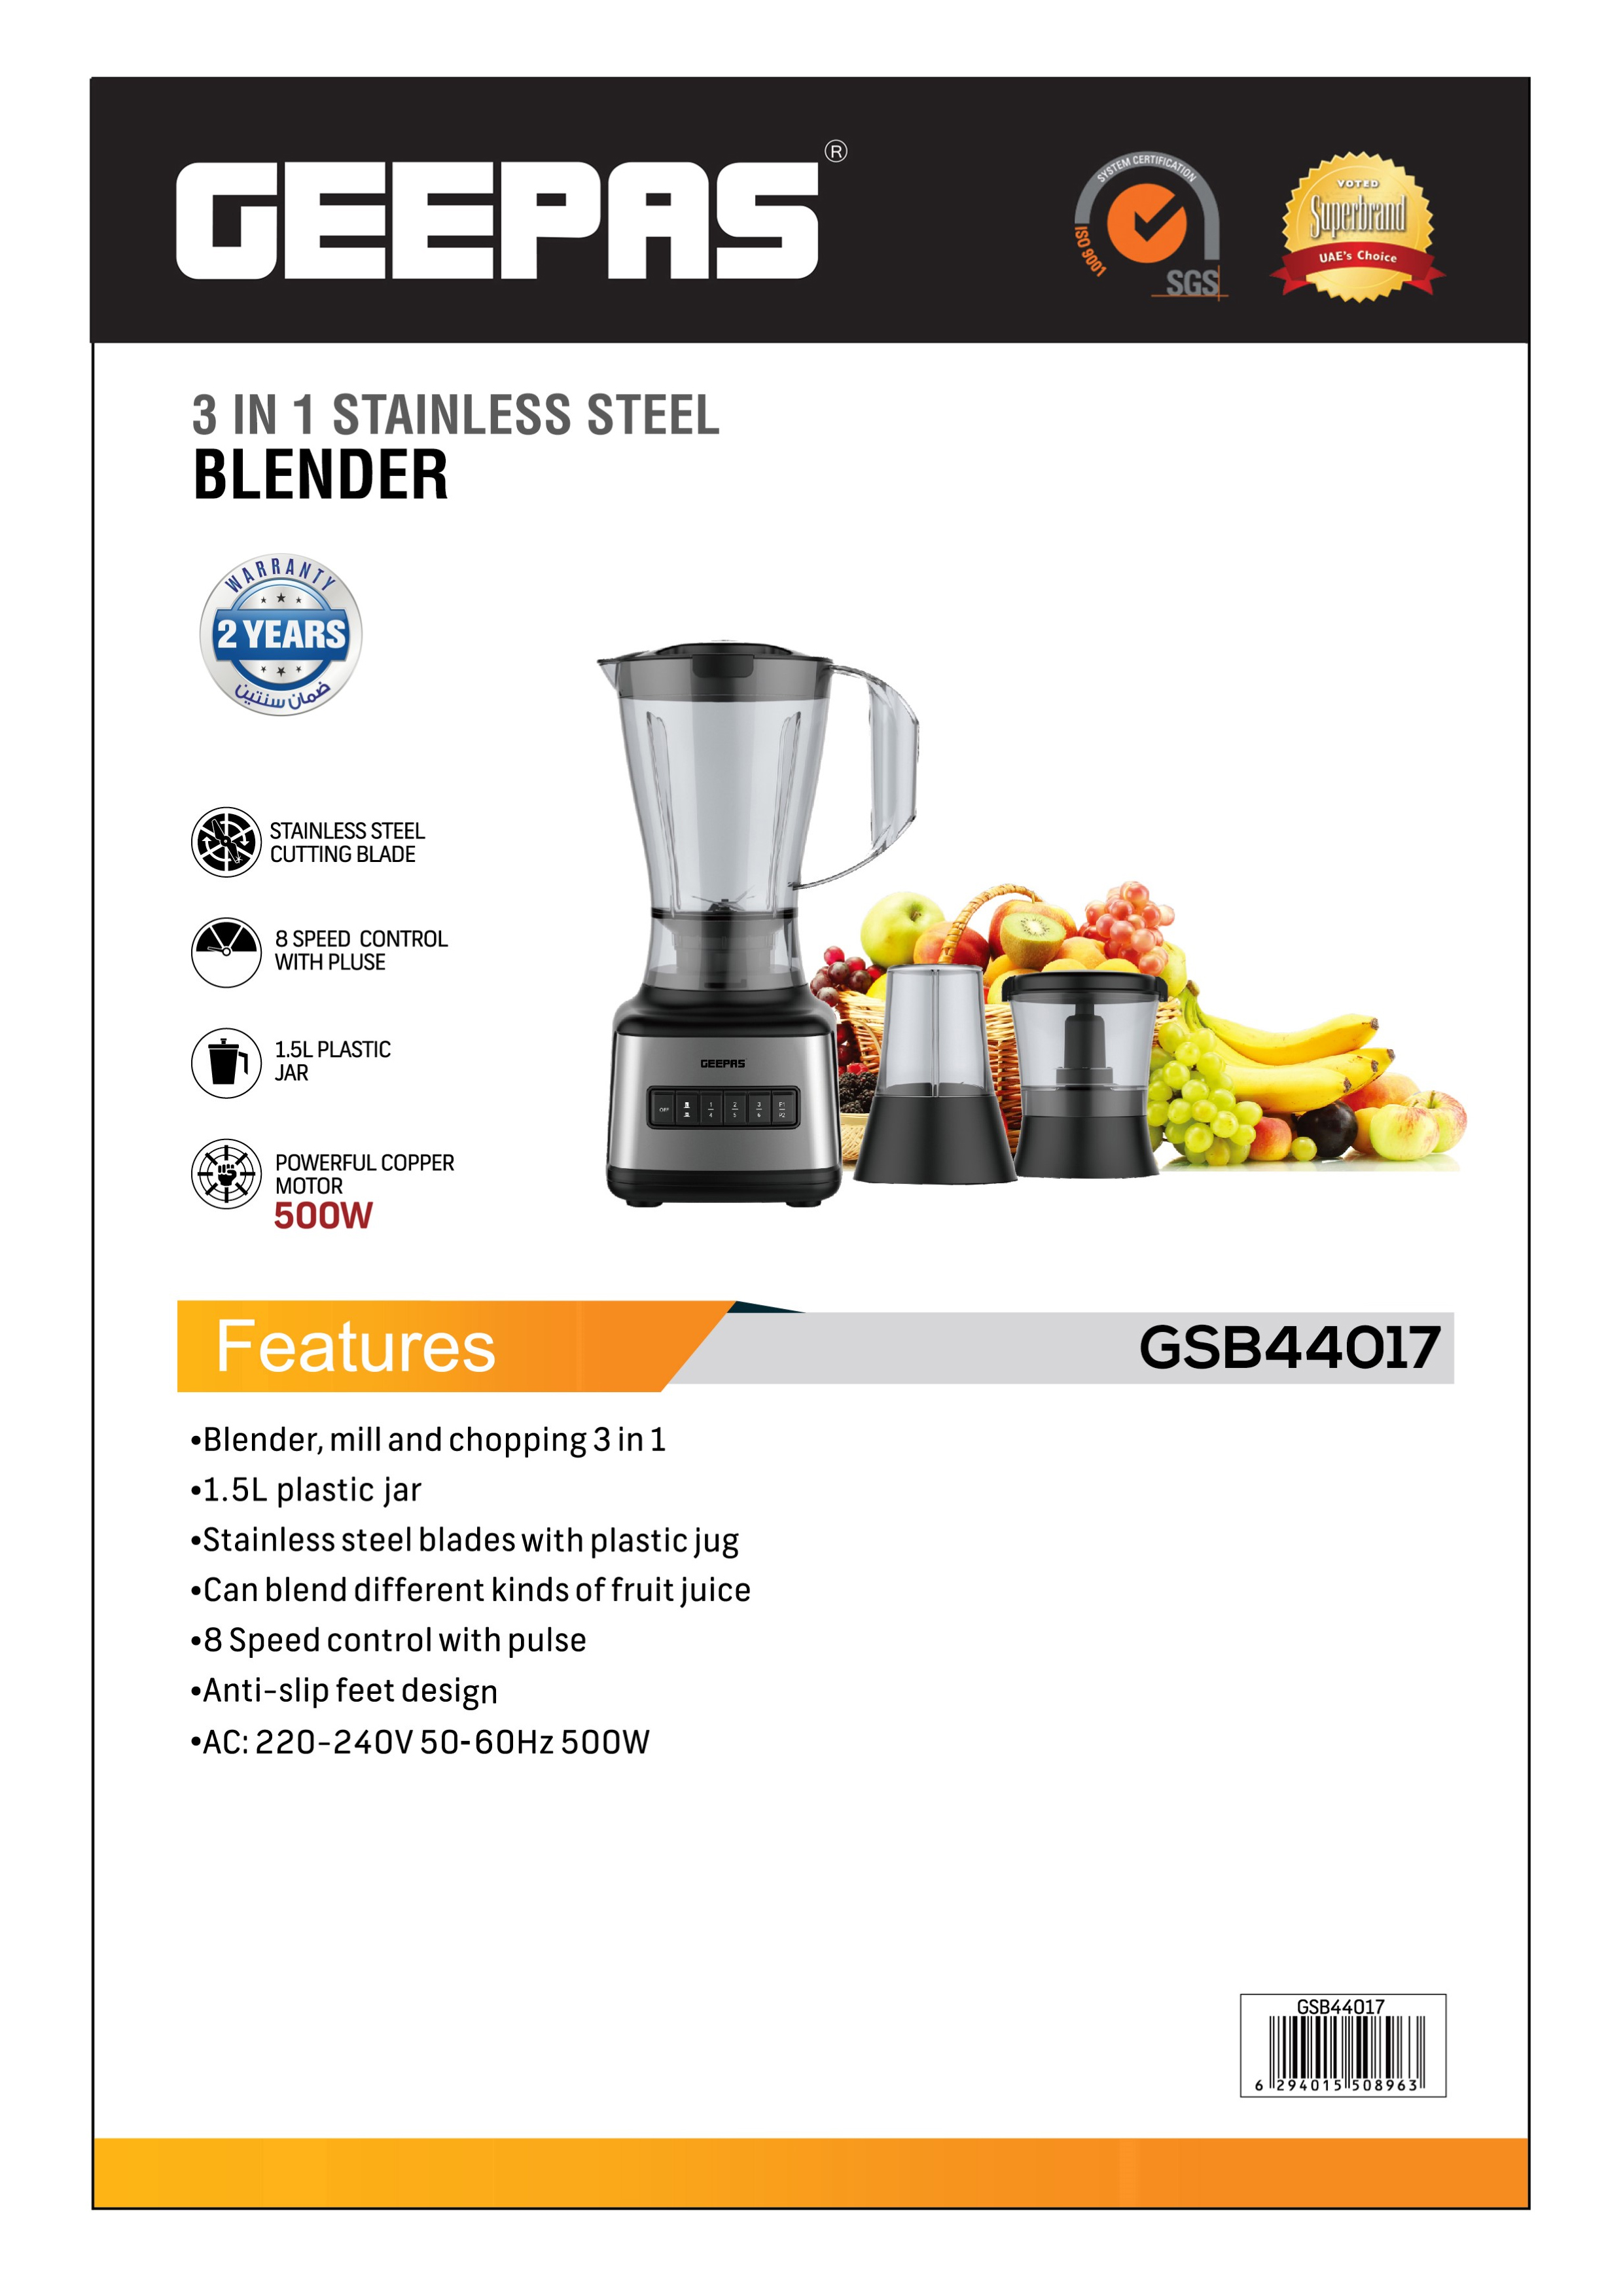 Buy Geepas 500W 3 In 1 Stainless Steel Blender - 8 Speed Control , 1.5L Plastic Jar, 4 Sharp Blades Online in UAE - Wigme